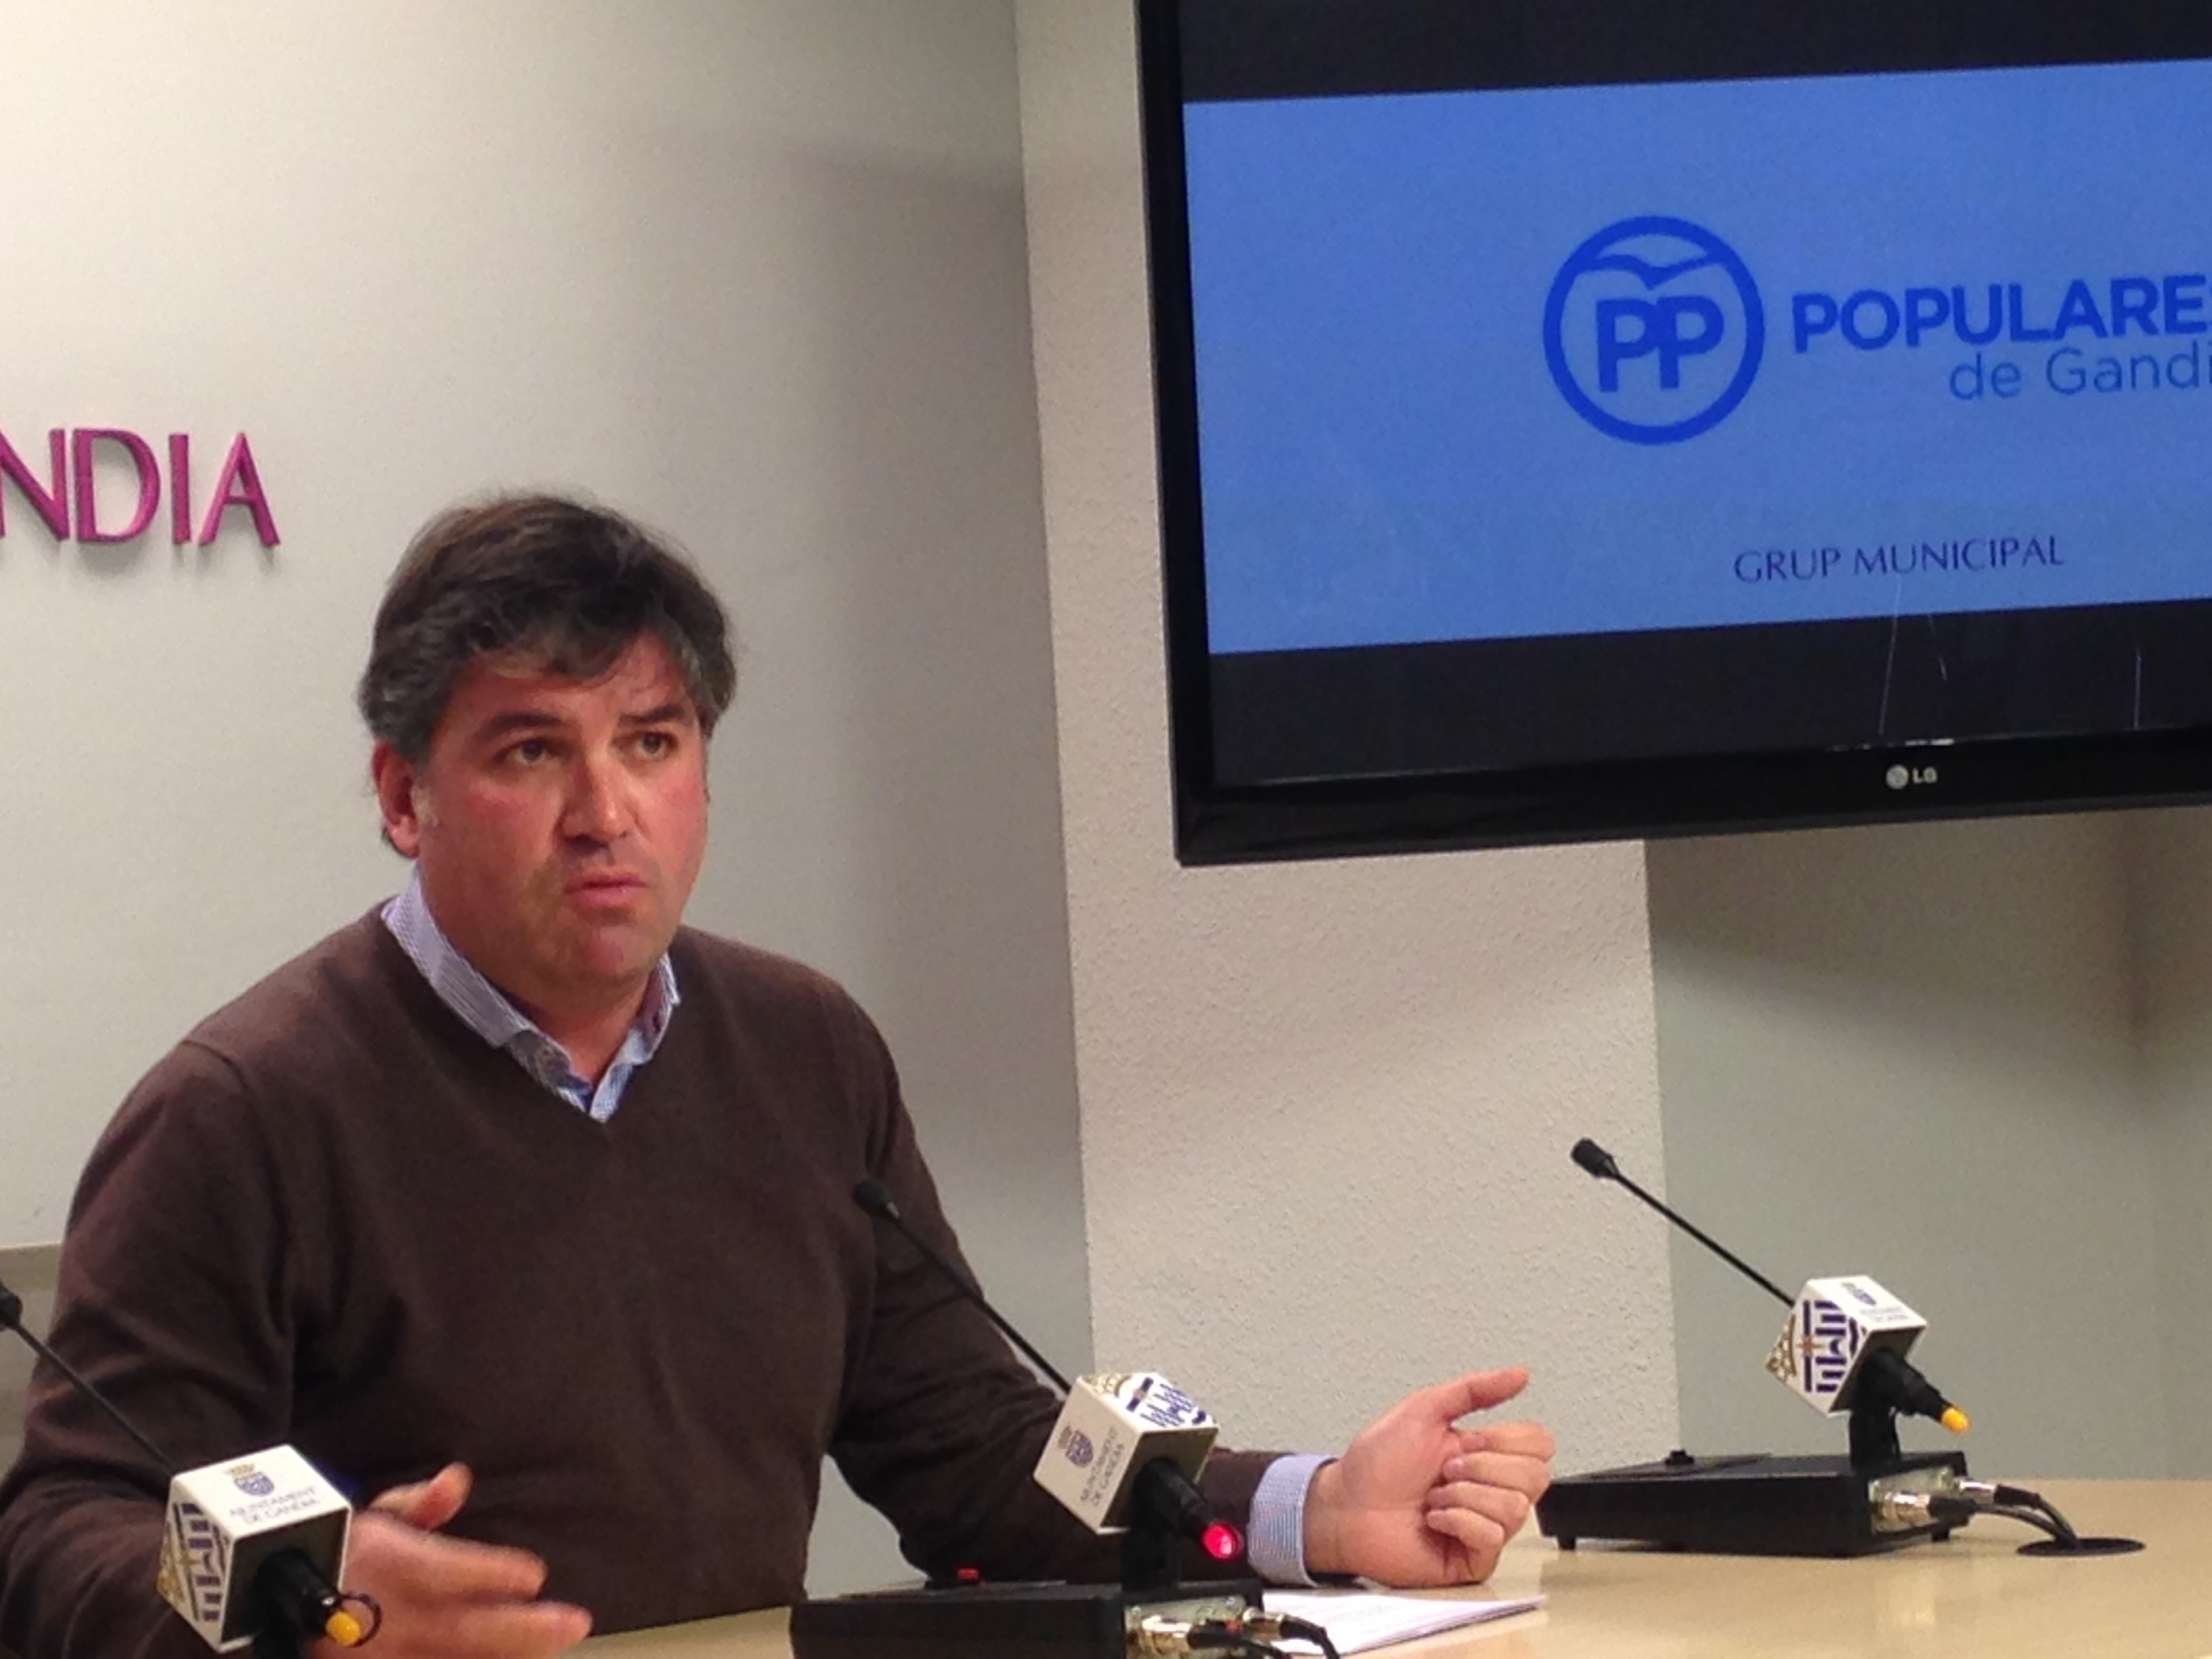 El PP dice que en Gandia se promociona el catalán con dinero público